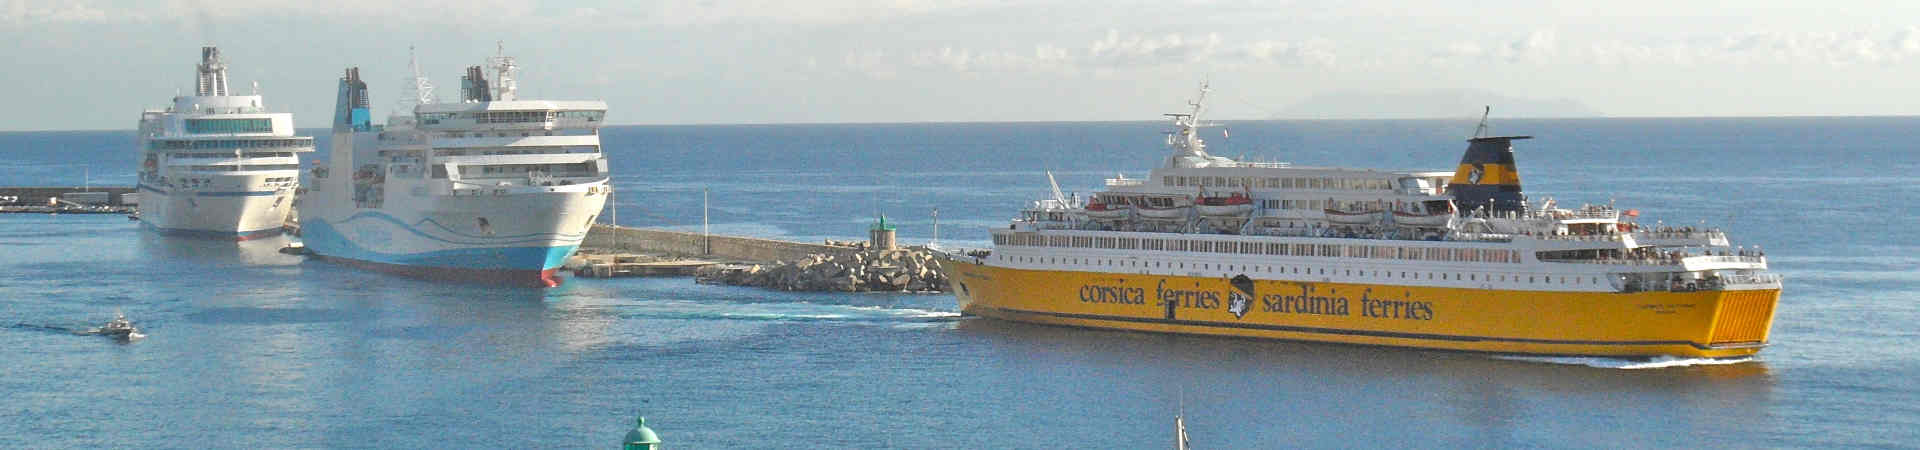 Immagine del porto di arrivo Bastia per la rotta traghetto Piombino - Bastia